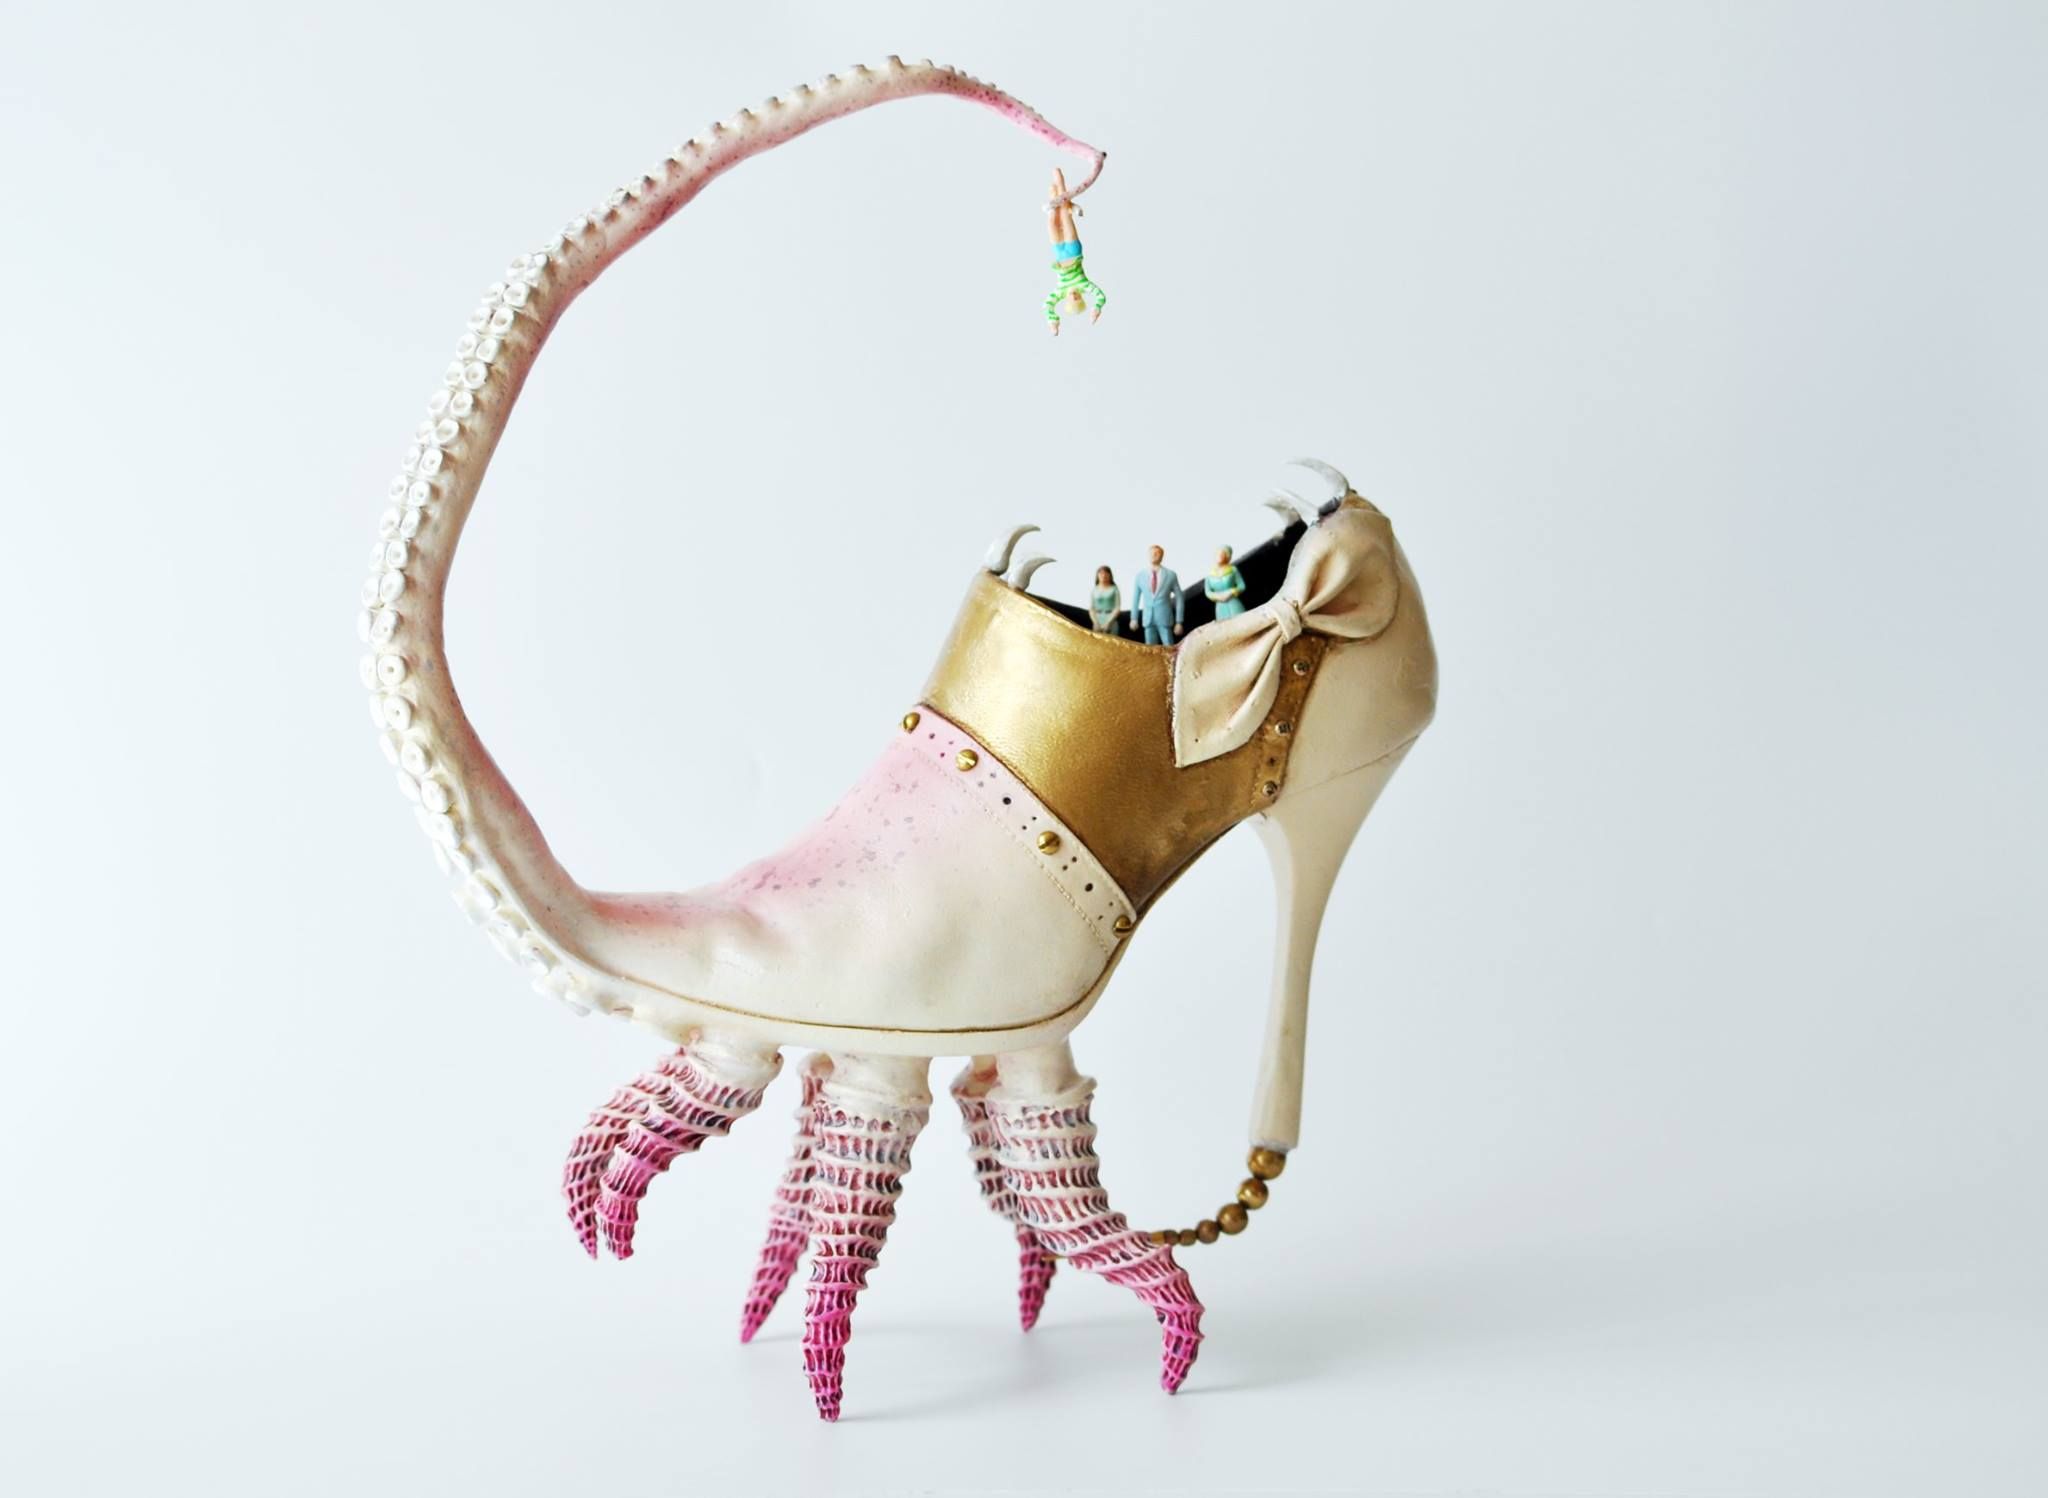 הנעליים הסוריאליסטיות של האמן התל אביבי קוסטה מג'ראקיס